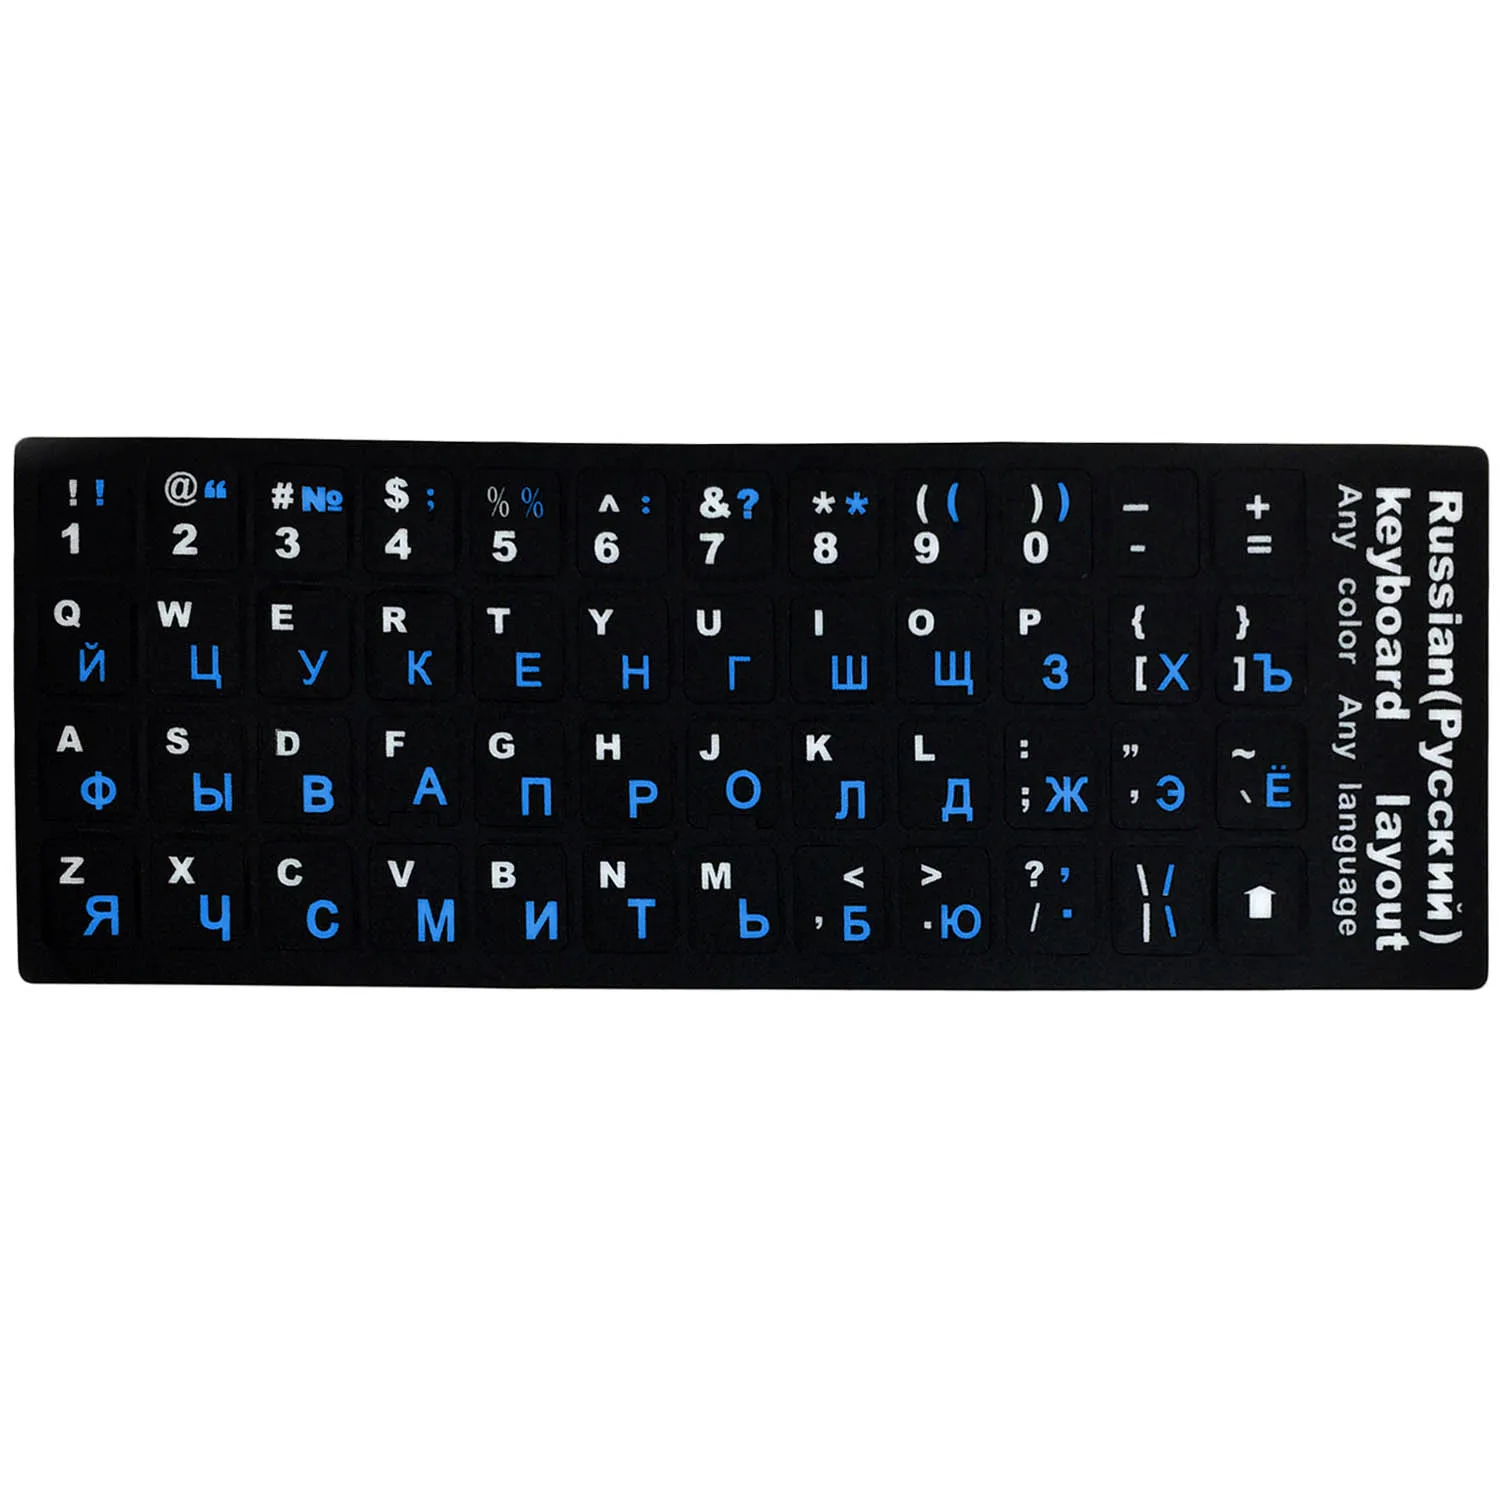 Besegad английская русская клавиатура Замена букв наклейки для ПК ноутбук настольные клавиатуры коврик - Цвет: Blue